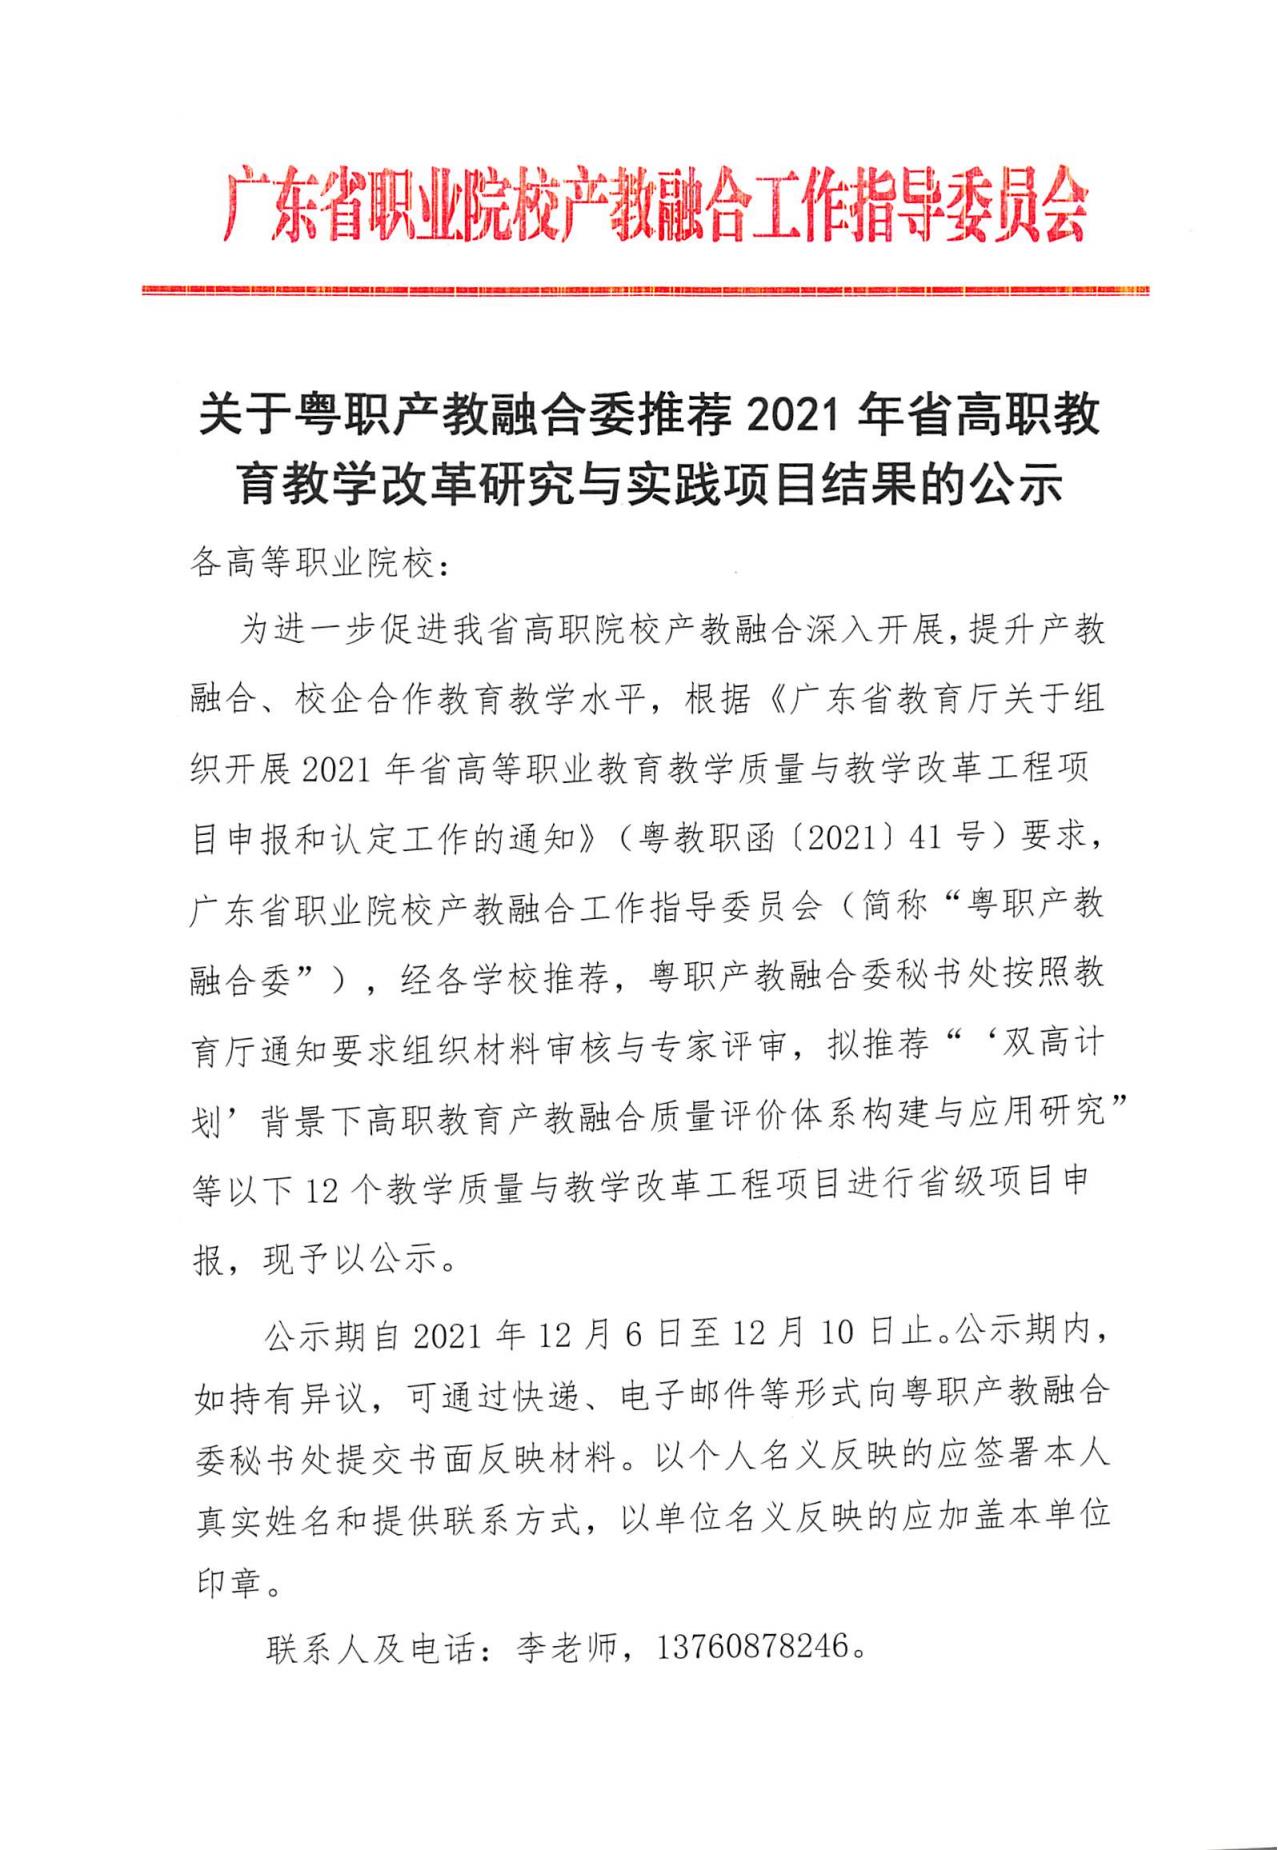 关于粤职产教融合委推荐2021年省高职教育教学改革研究与实践项目结果的公示